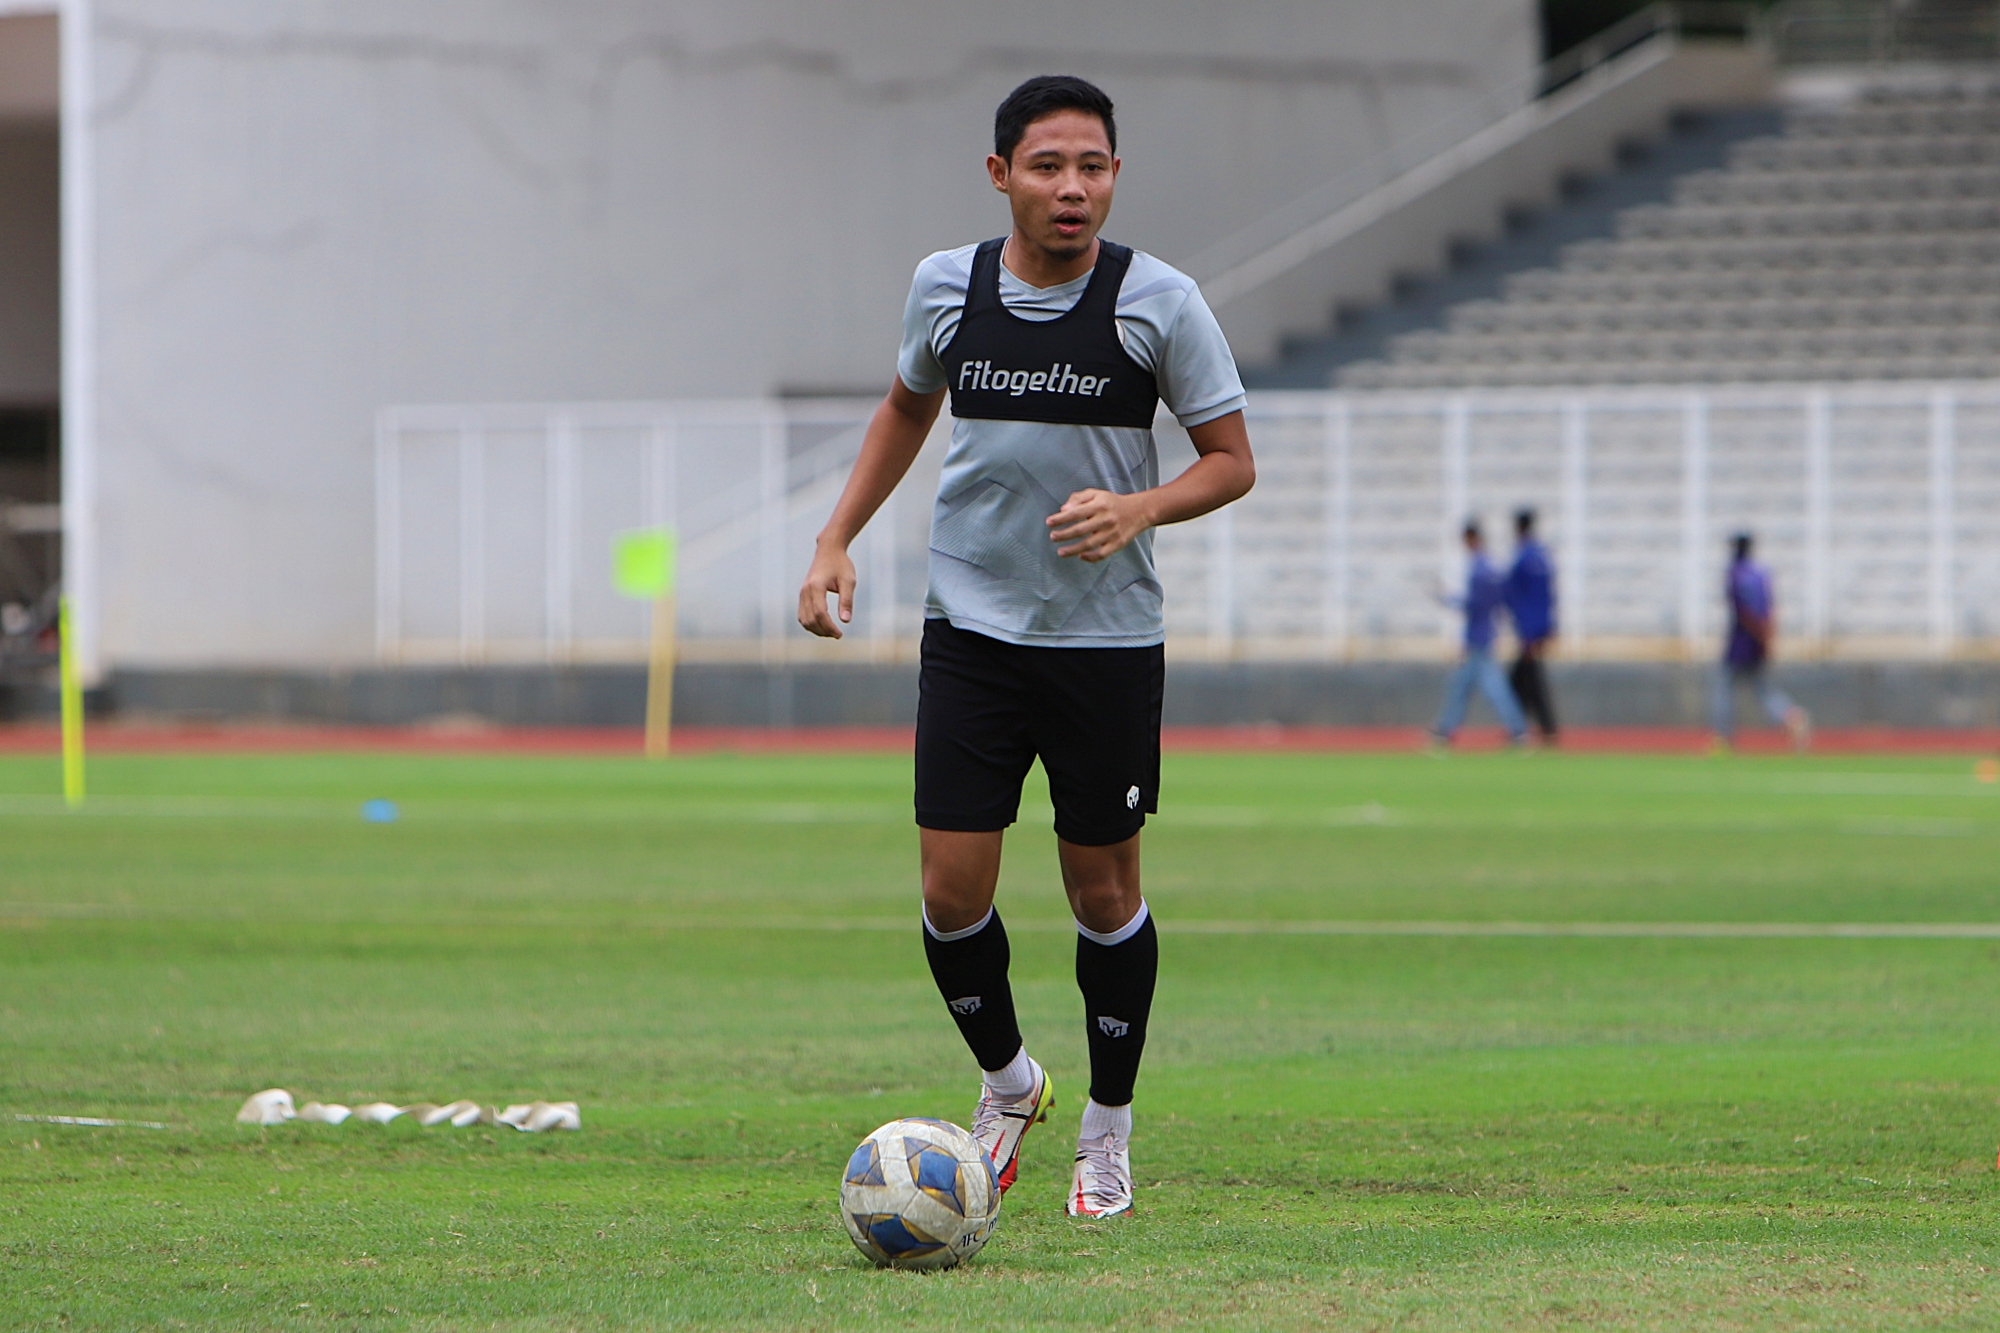 Final Piala AFF 2020: Evan Dimas Minta Timnas Indonesia Bertanding dengan Rasa Haus Kemenangan